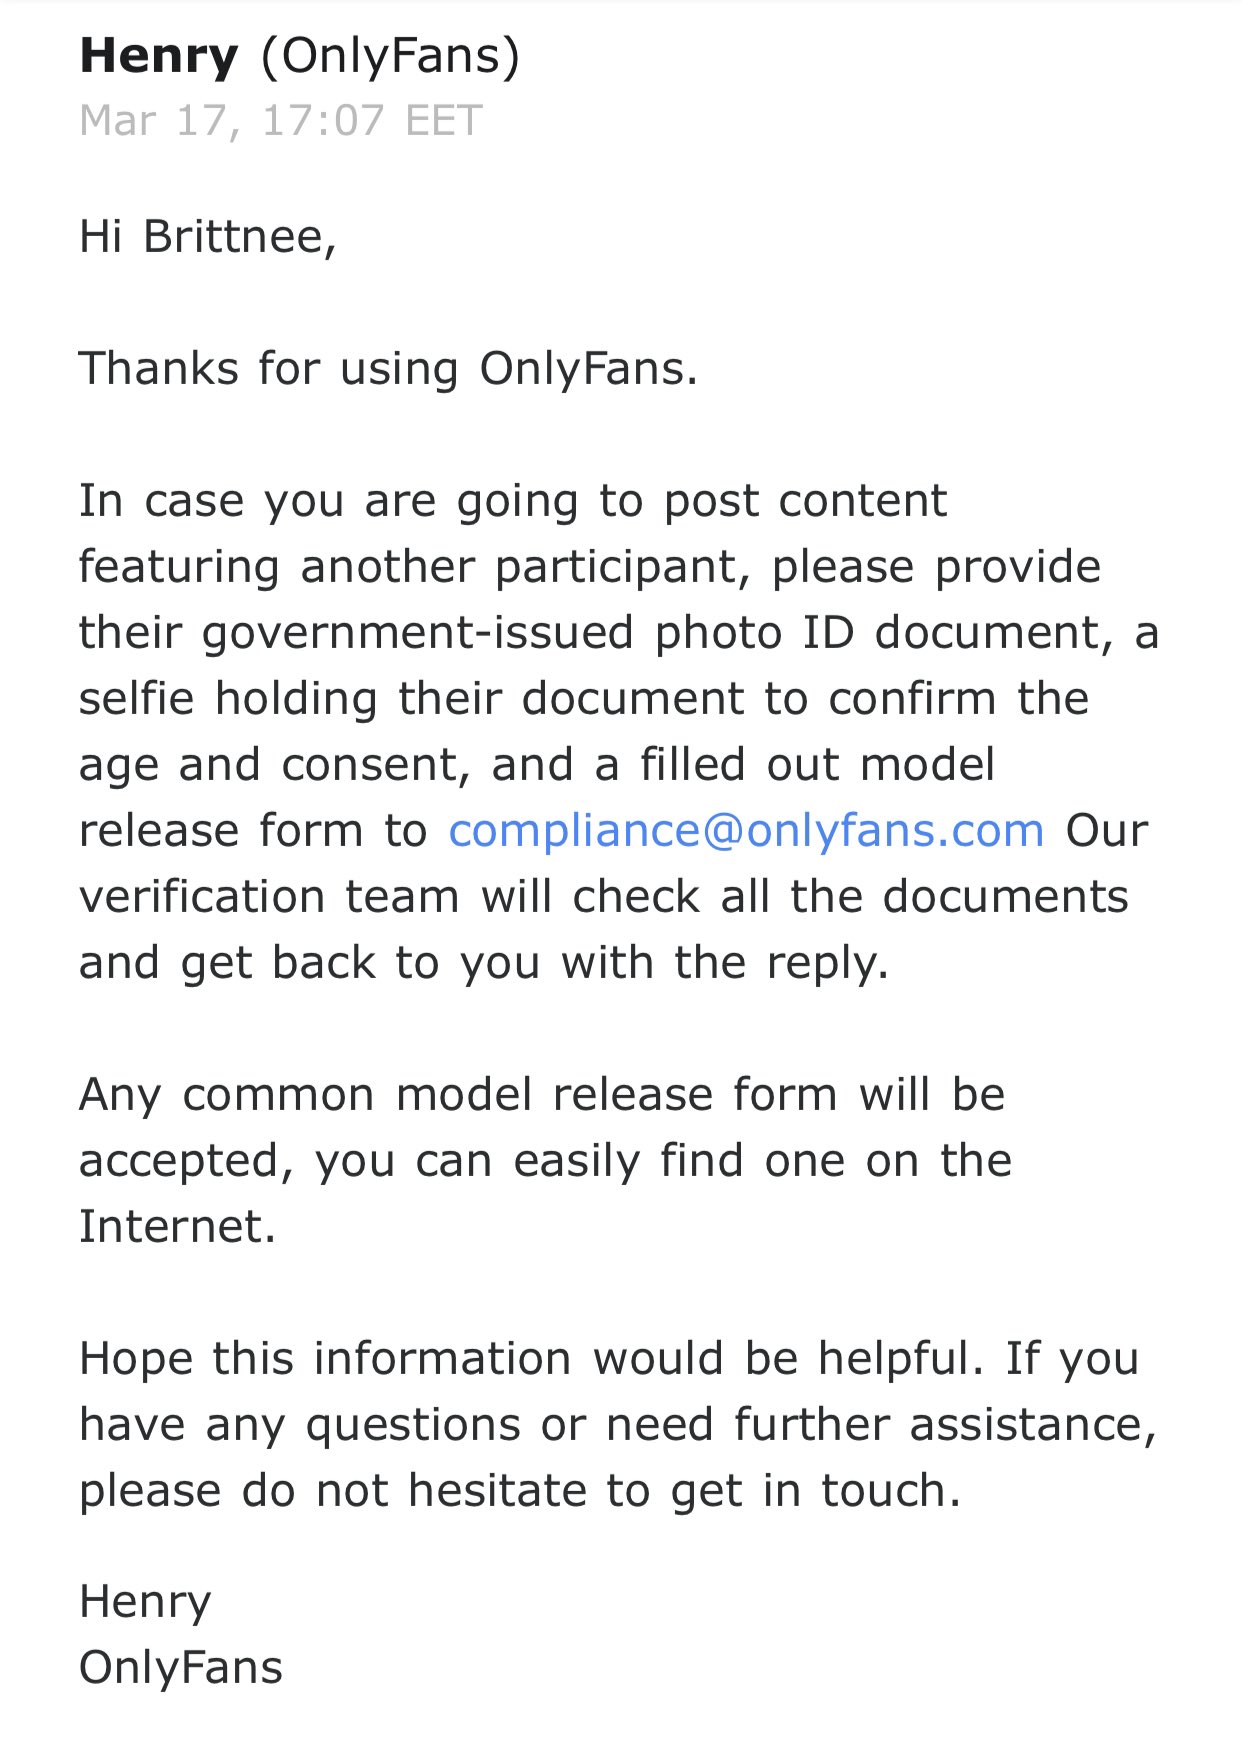 Onlyfans model release form